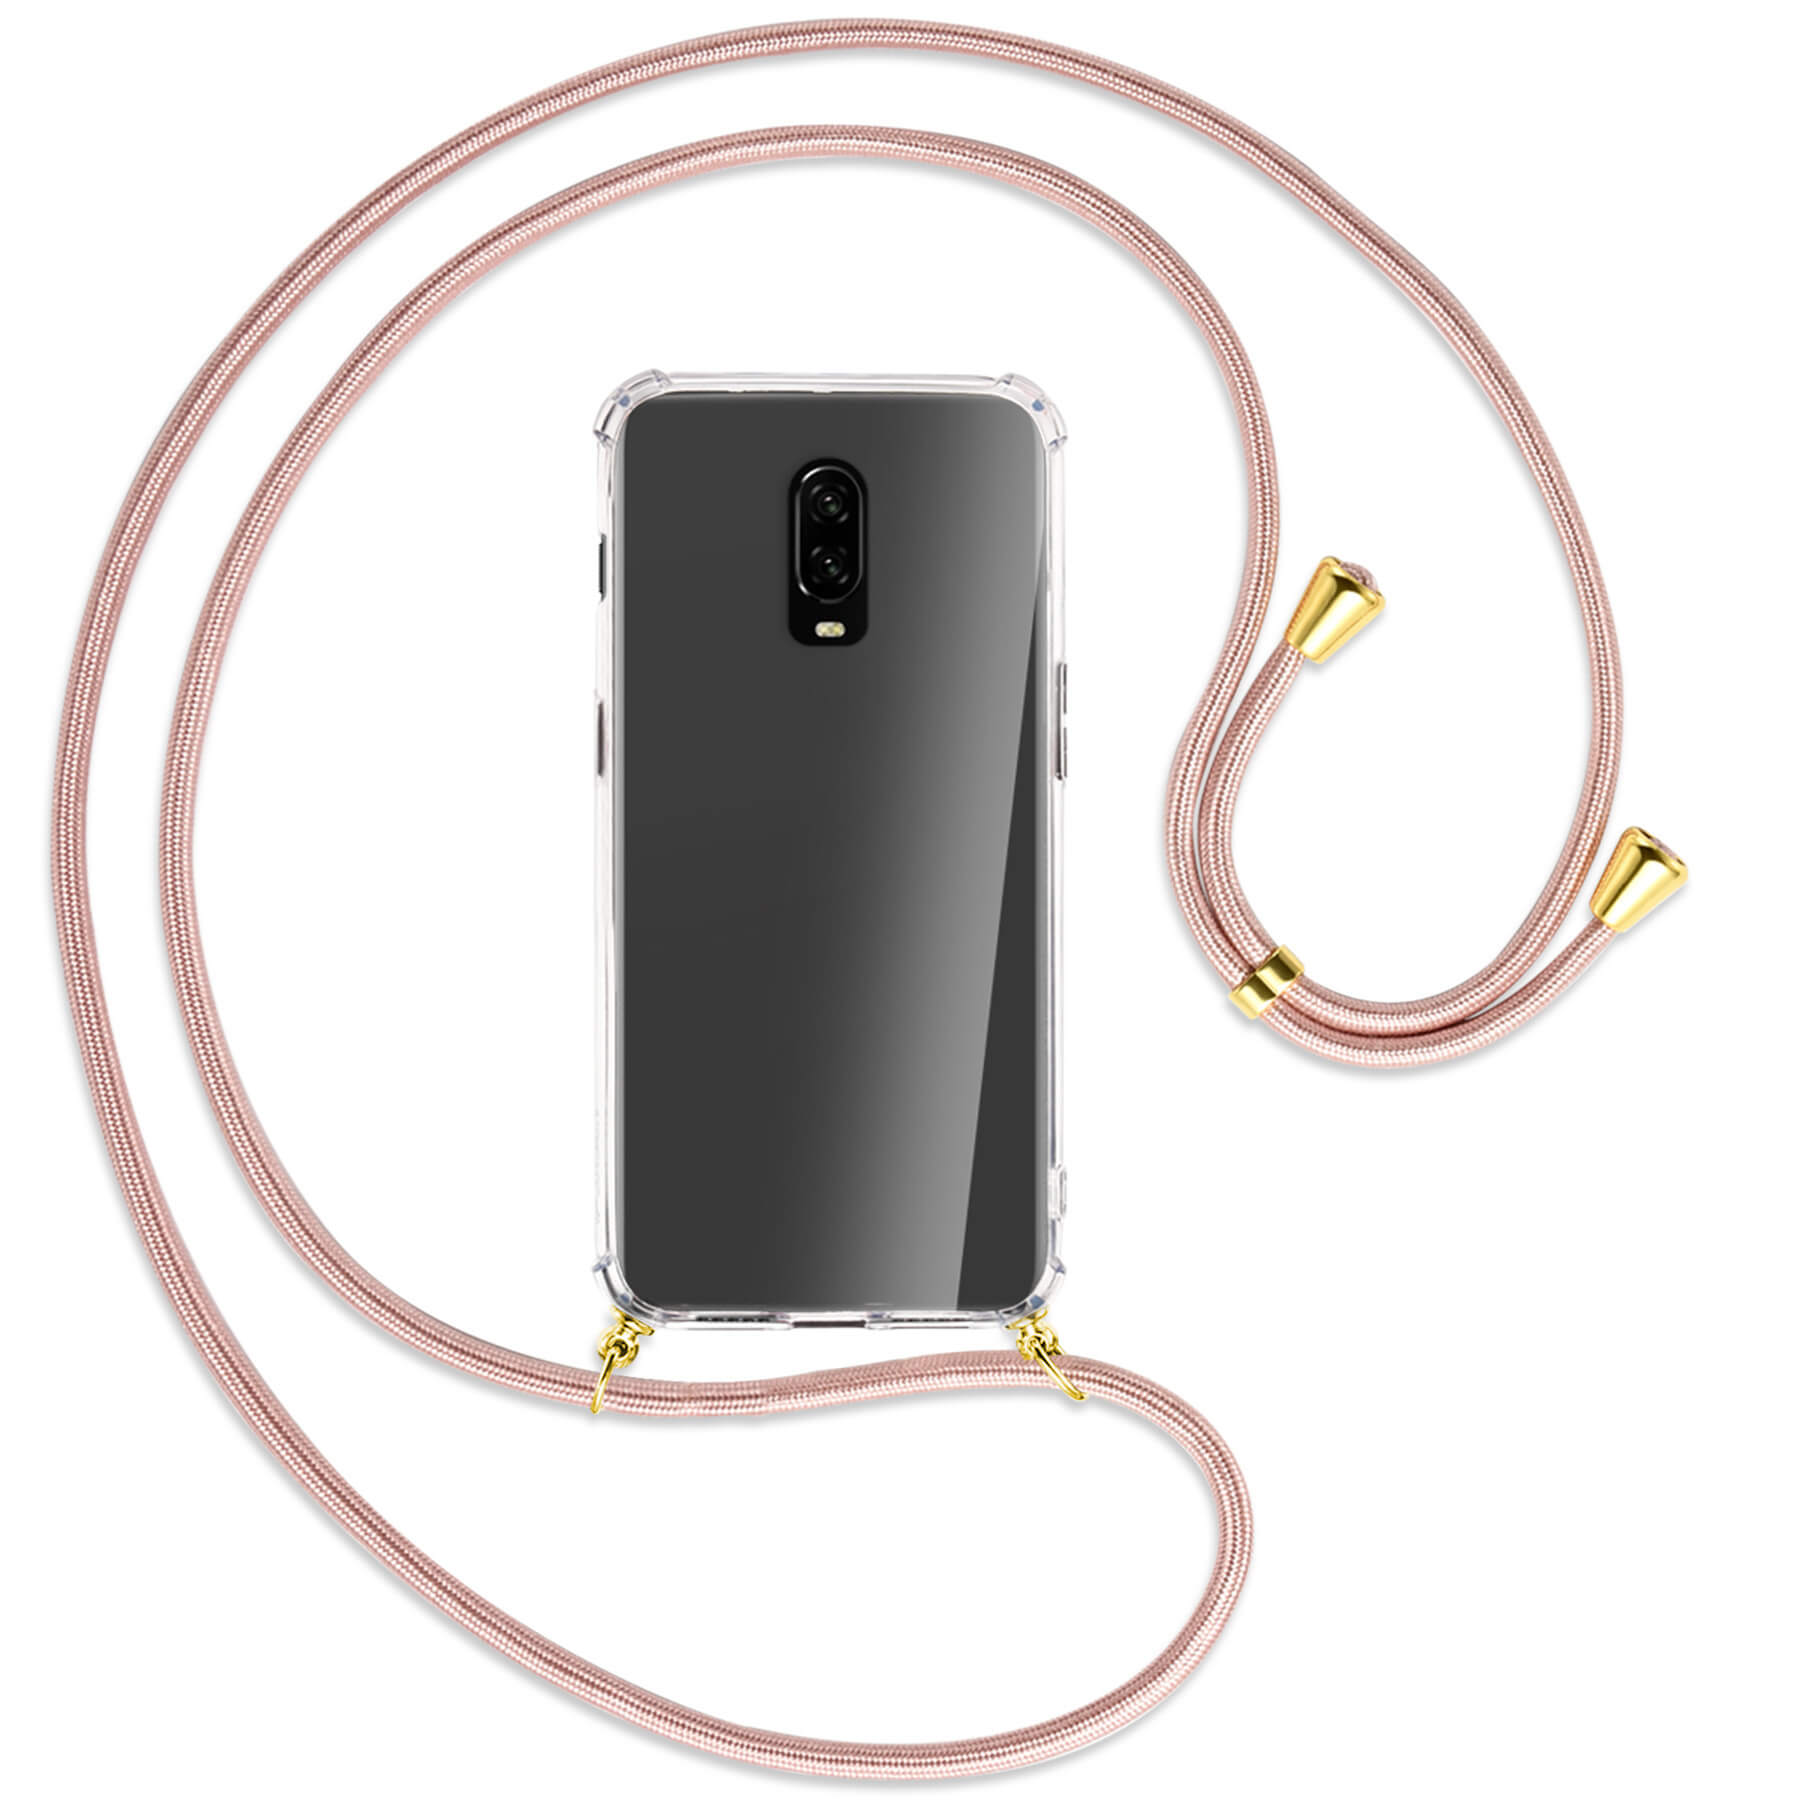 MTB MORE Rosegold Umhänge-Hülle / Gold OnePlus, ENERGY 6T, Backcover, mit Kordel